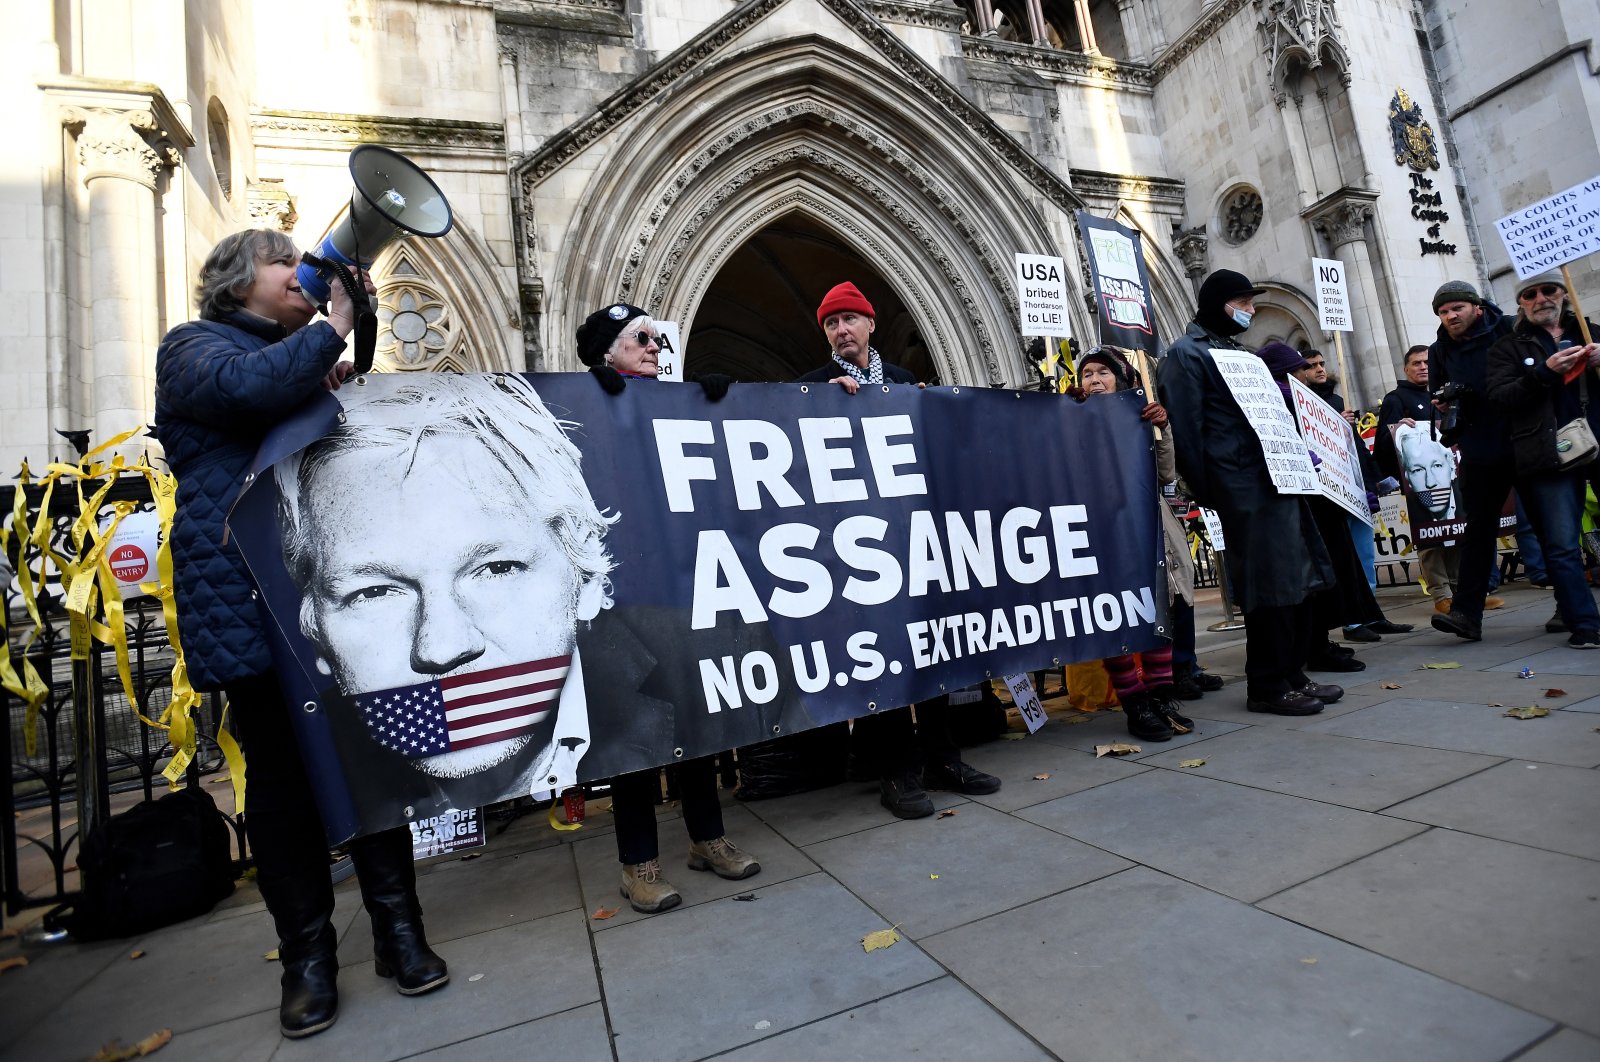 Kasus Assange menimbulkan kekhawatiran atas kebebasan media: kepala hak asasi PBB